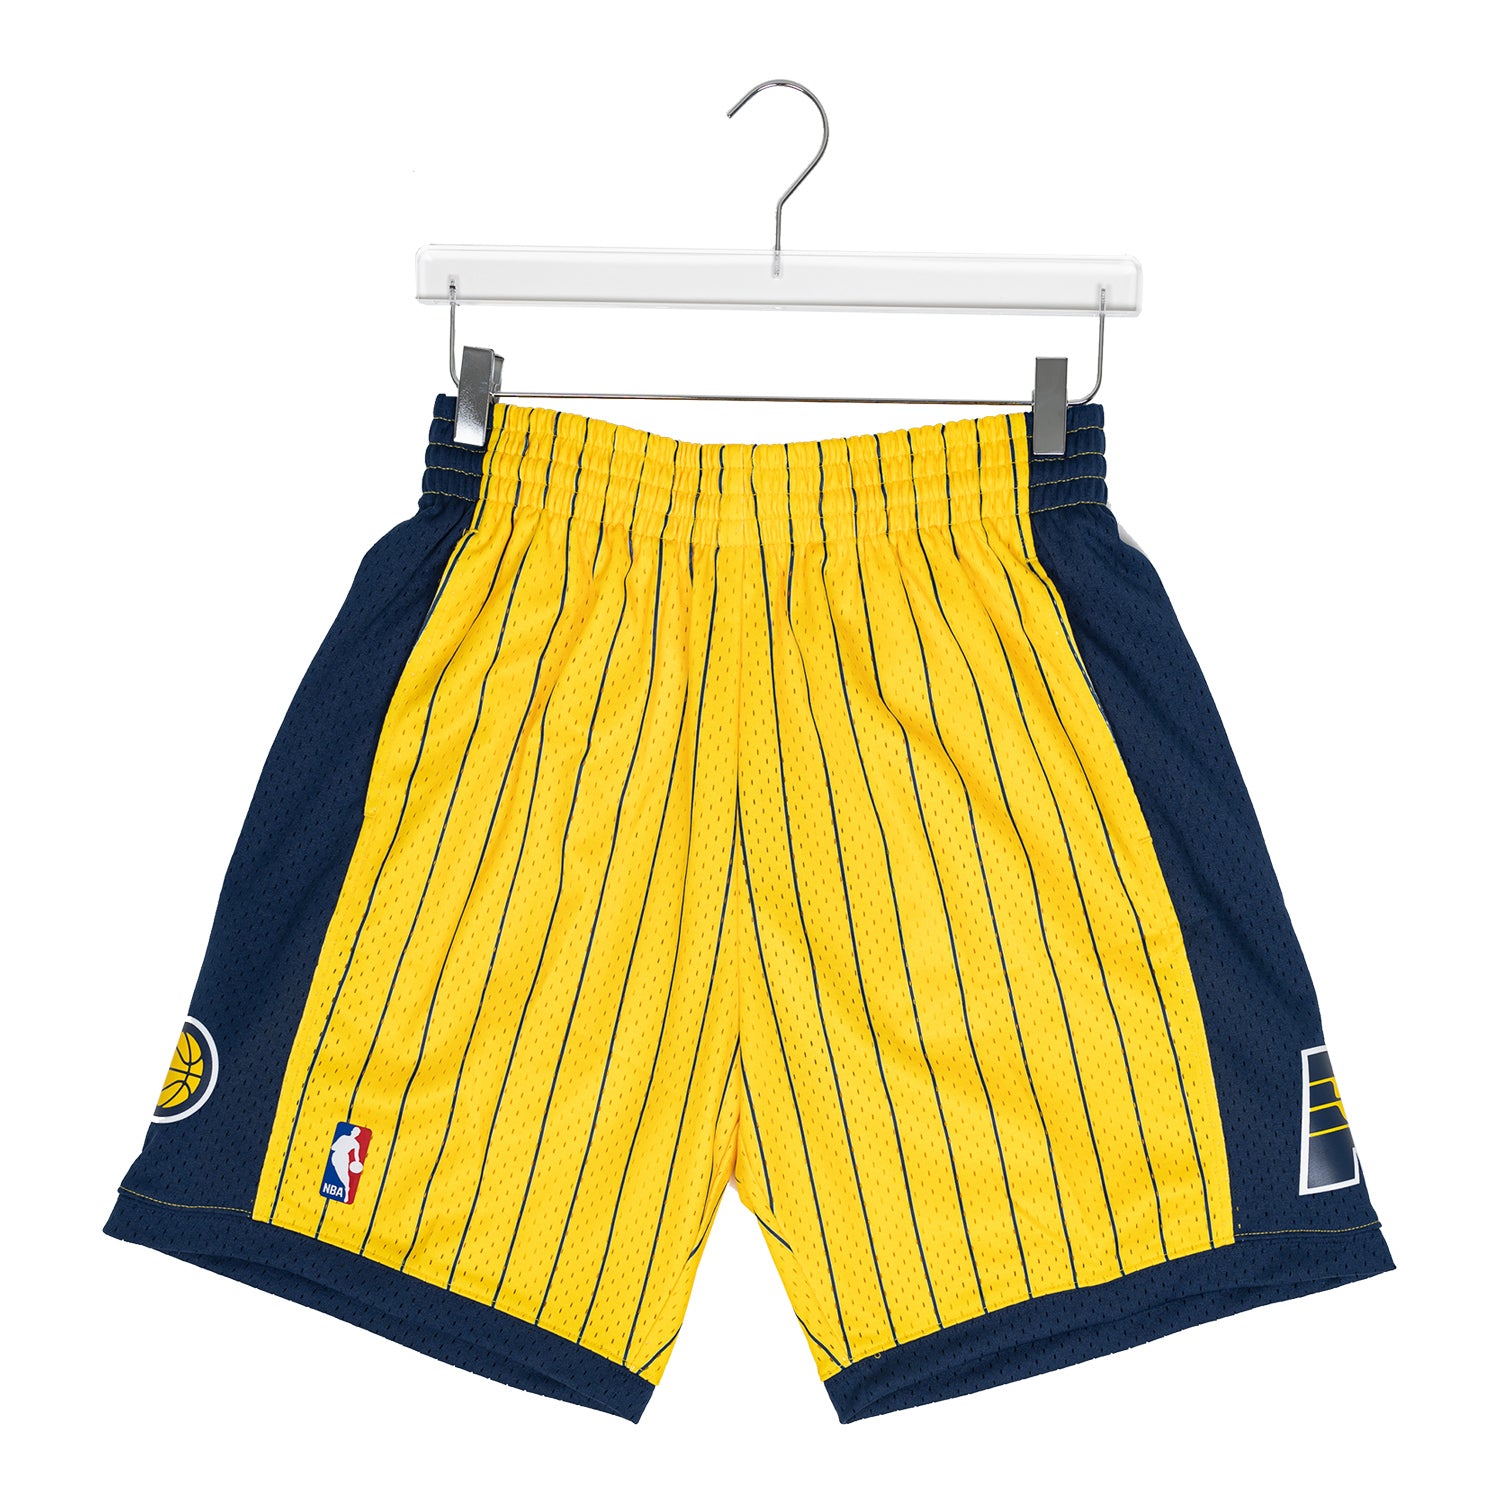 Mitchell & Ness Apparel. Basketball Shorts, T-shirts & Jerseys